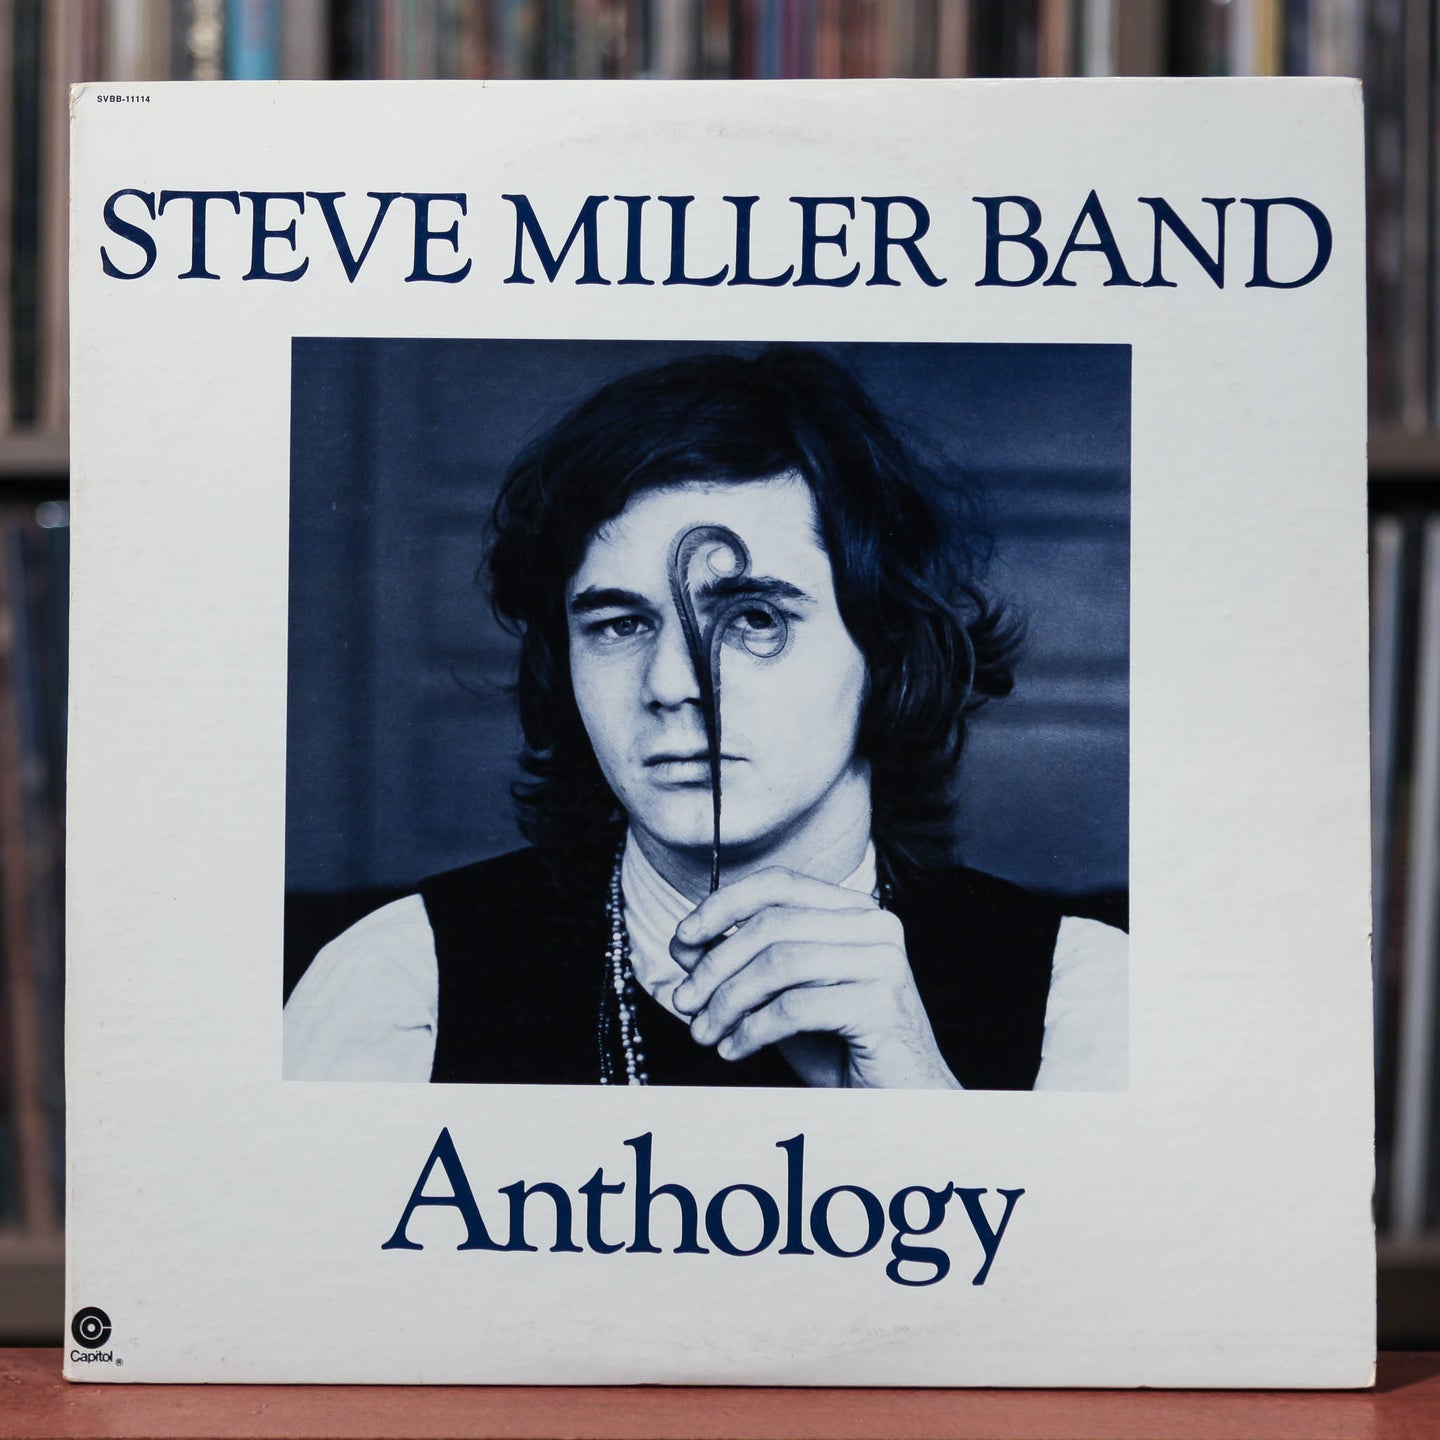 Steve Miller Band - Anthology - 2LP- 1972 Capitol - VG+/VG+